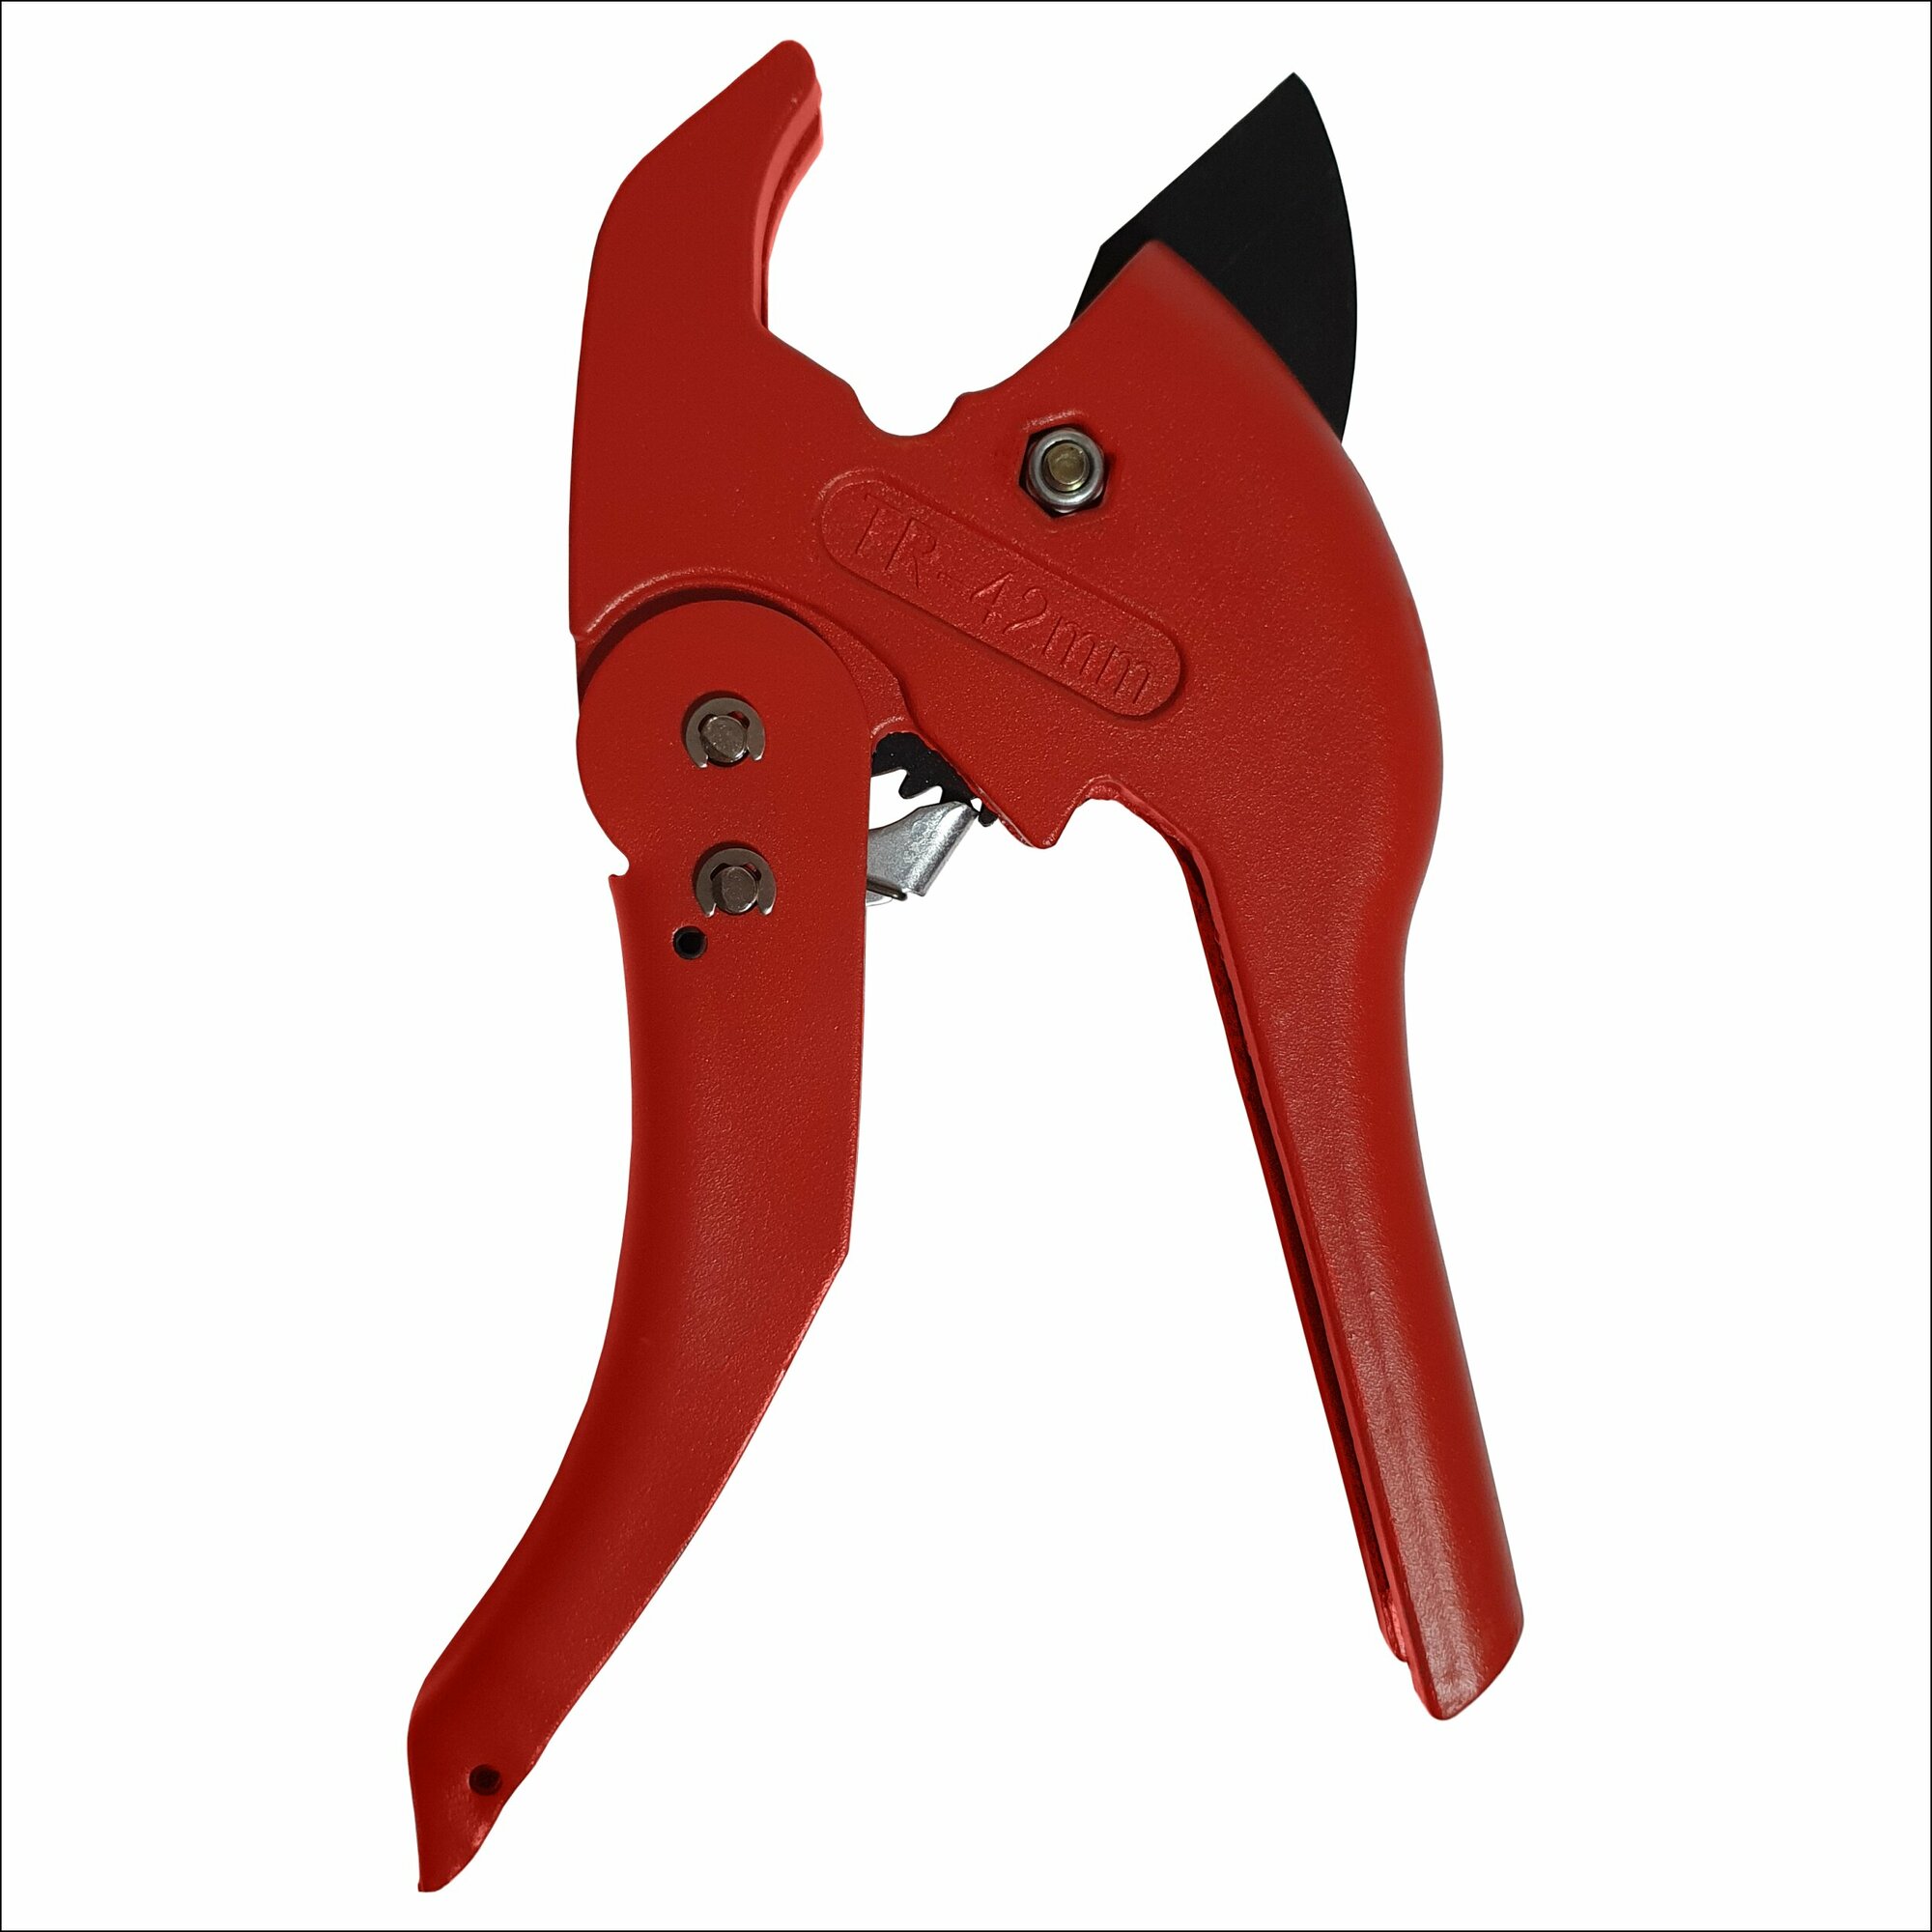 Ножницы усиленные для резки ПВХ труб VER8 05 D до 42мм/ ручной труборез/ ножницы для металлопластиковых труб красные